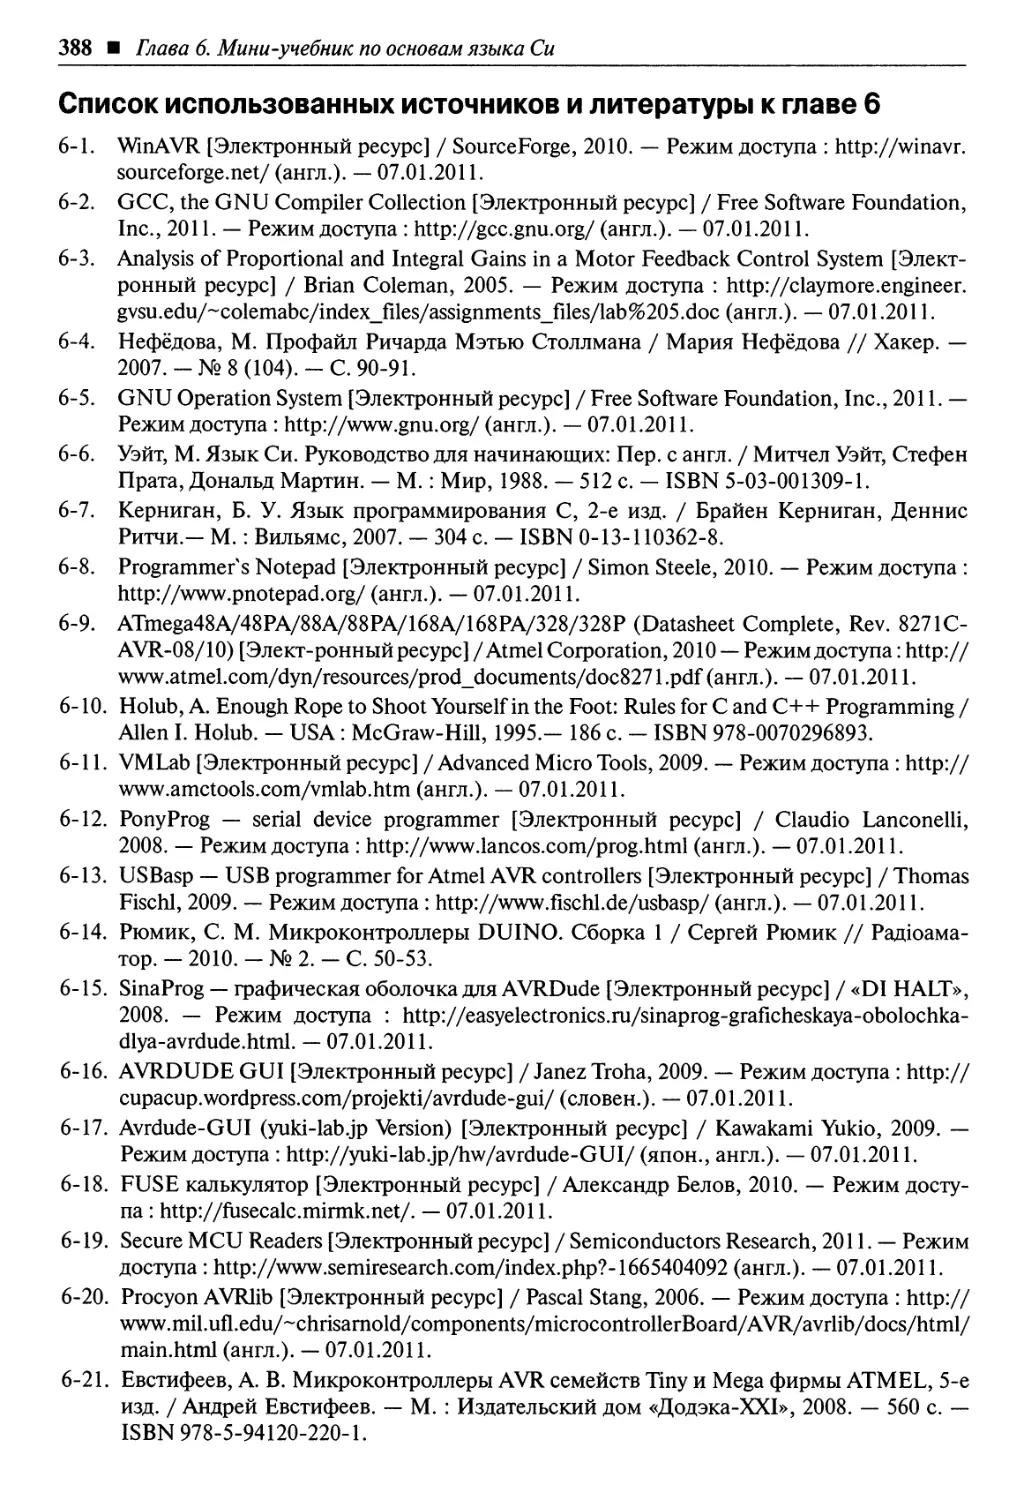 Список использованных источников и литературы к главе 6